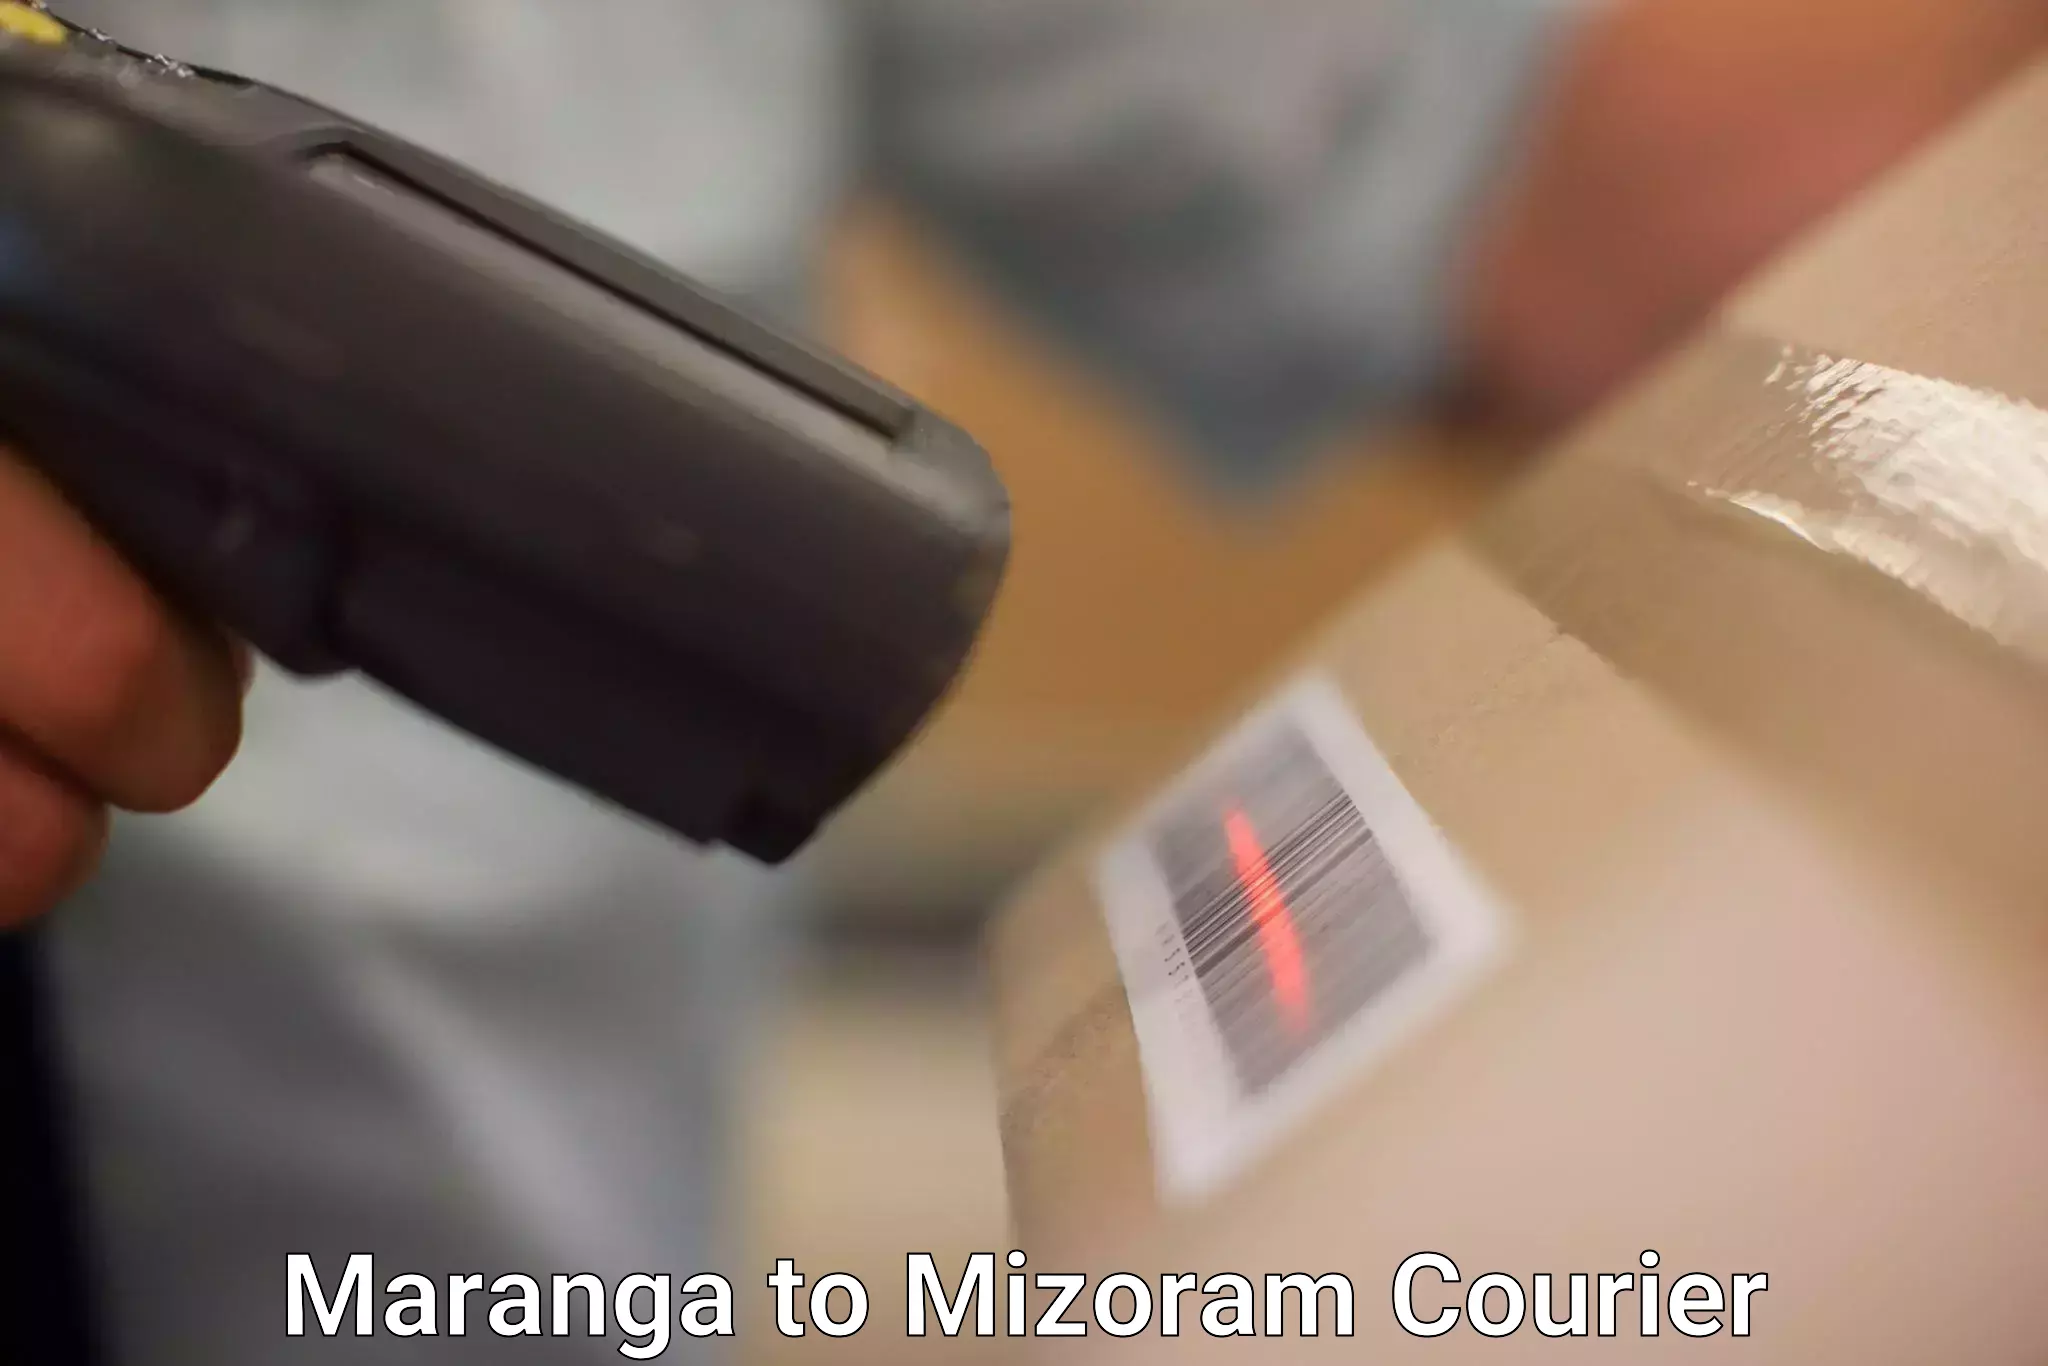 24/7 courier service Maranga to Aizawl